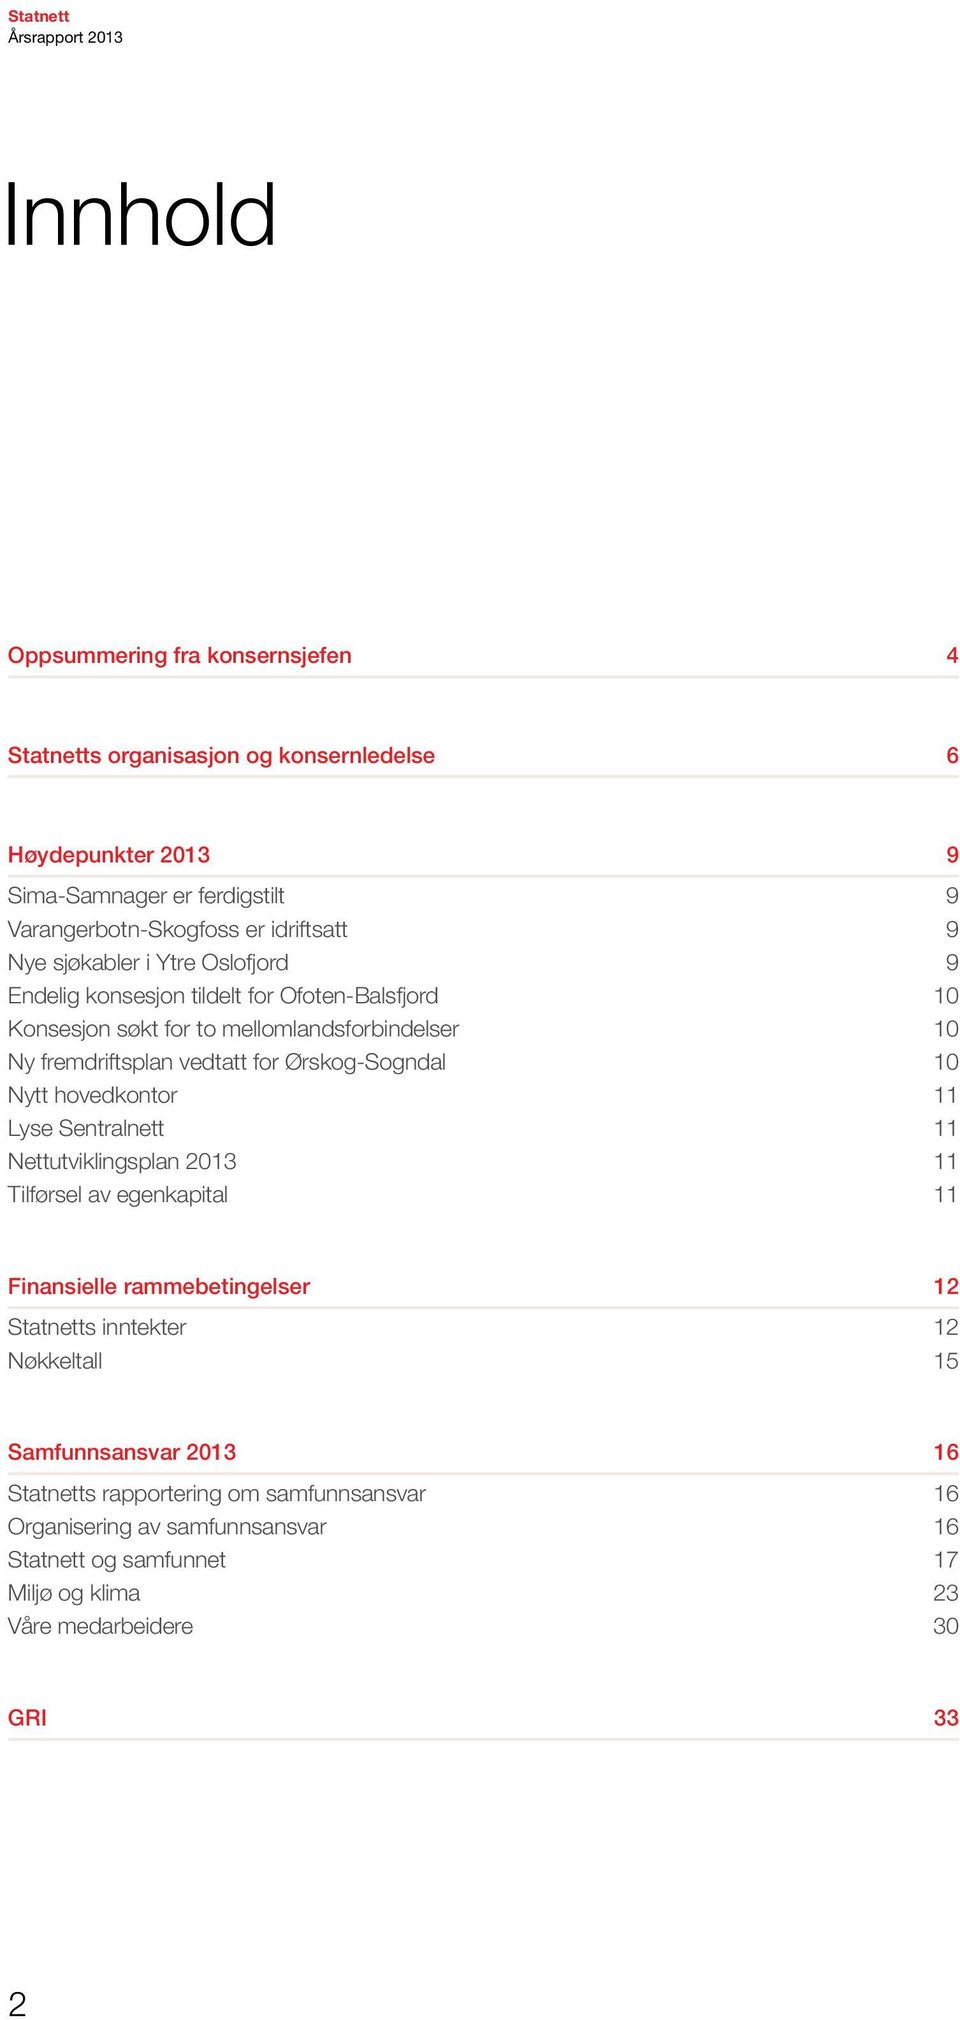 Ørskog-Sogndal 10 Nytt hovedkontor 11 Lyse Sentralnett 11 Nettutviklingsplan 2013 11 Tilførsel av egenkapital 11 Finansielle rammebetingelser 12 Statnetts inntekter 12